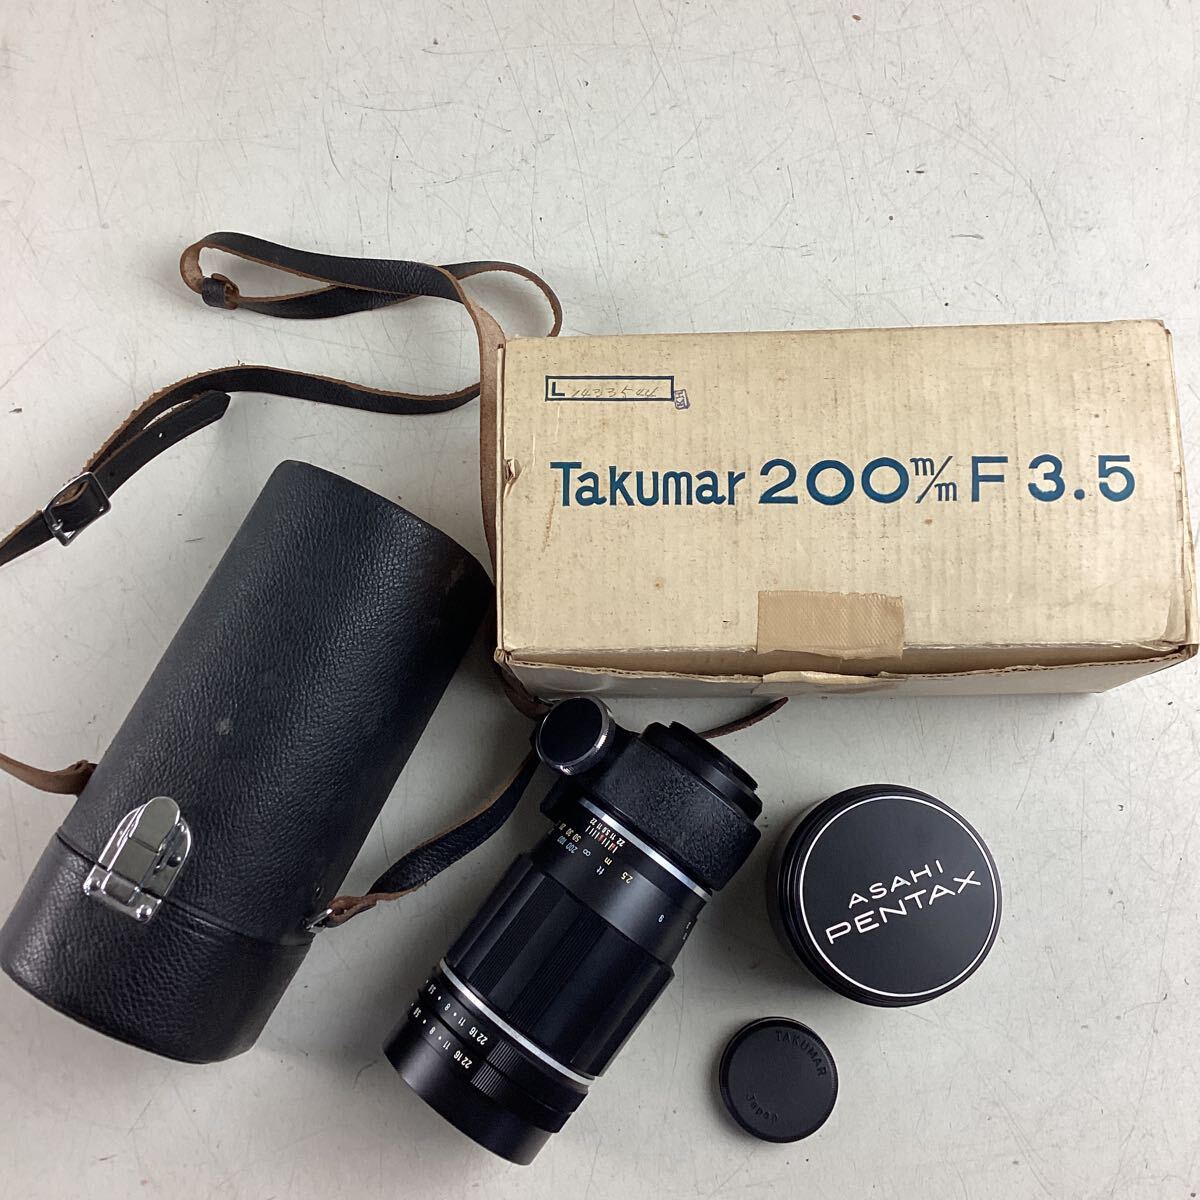 k5251 PENTAX Takumar 200m/m F3.5 カメラレンズ カメラ レンズ 単焦点 ペンタックス 撮影 写真 レンズチリあり 中古_画像2